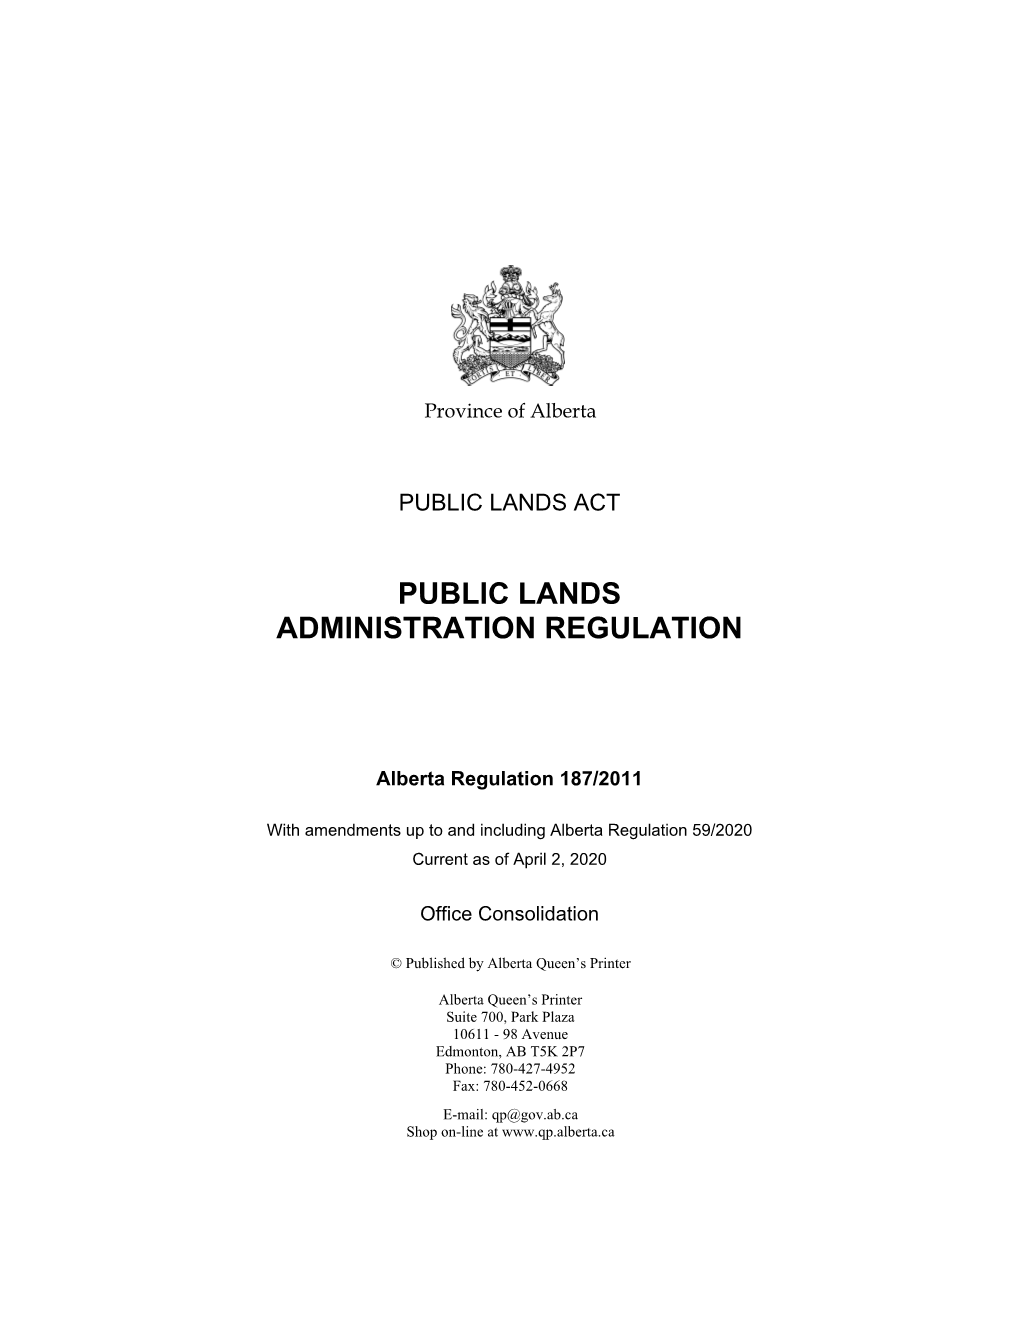 Public Lands Administration Regulation